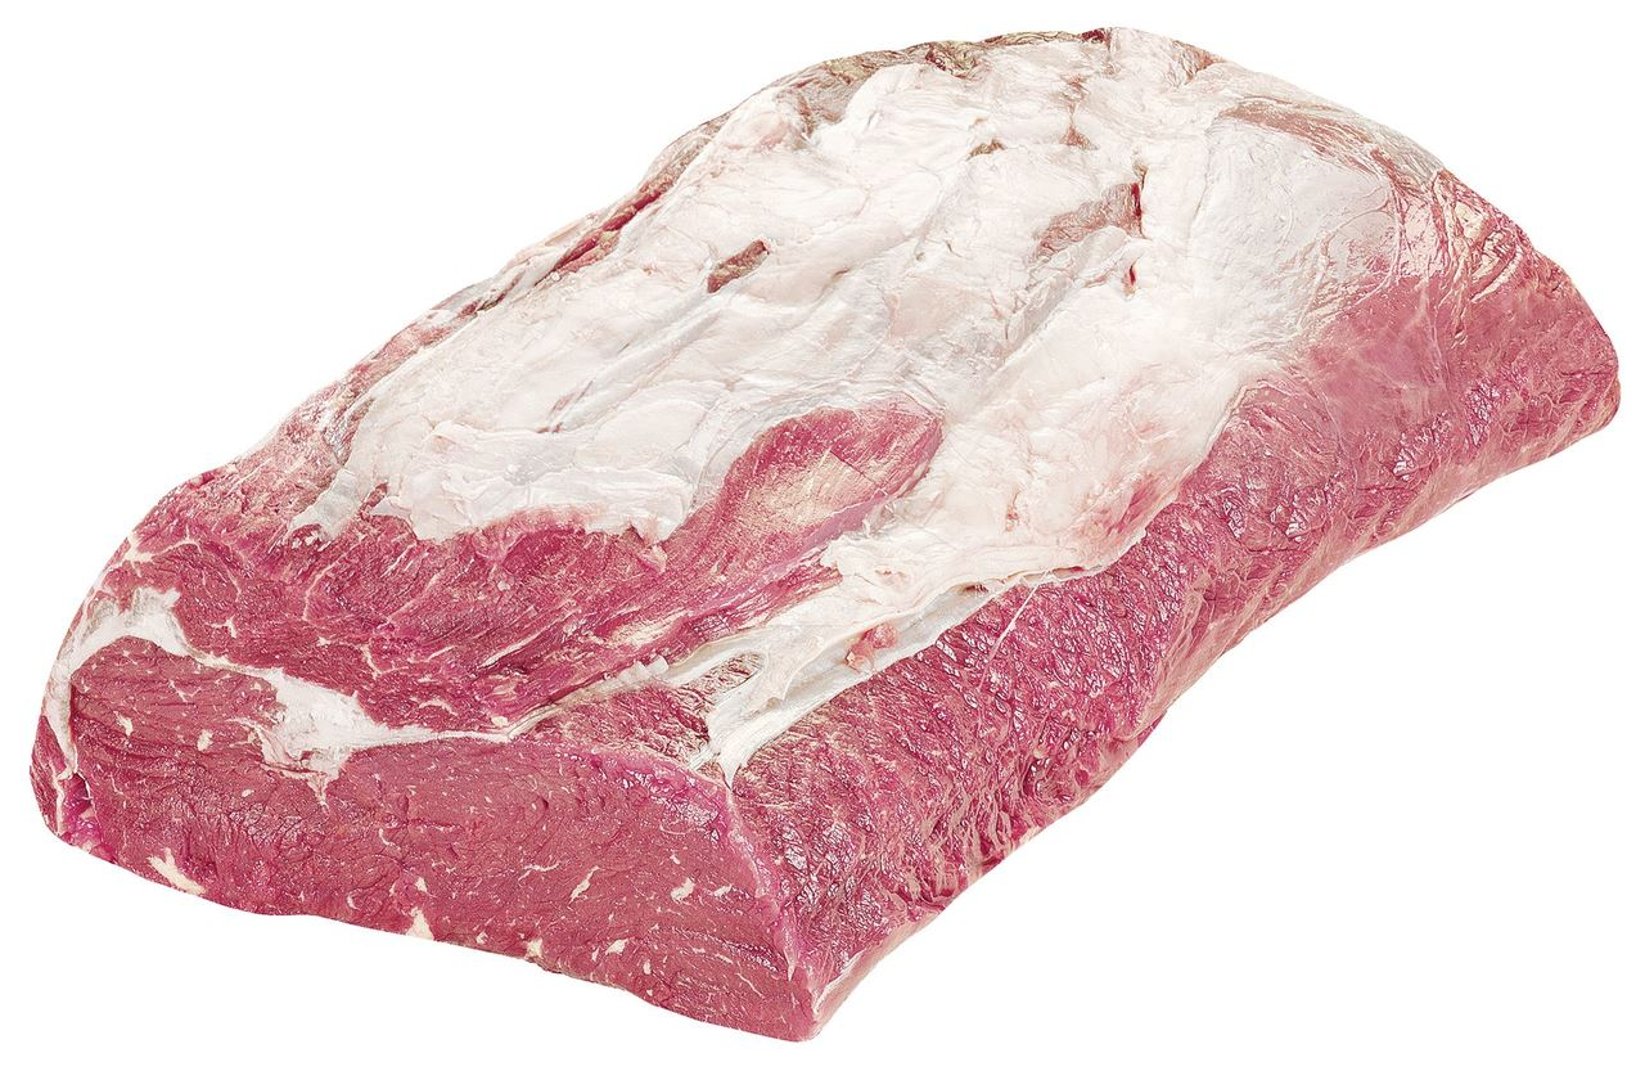 Argentinisches Rinder-Entrecôte (Ribeye) - ca. 2,5 kg